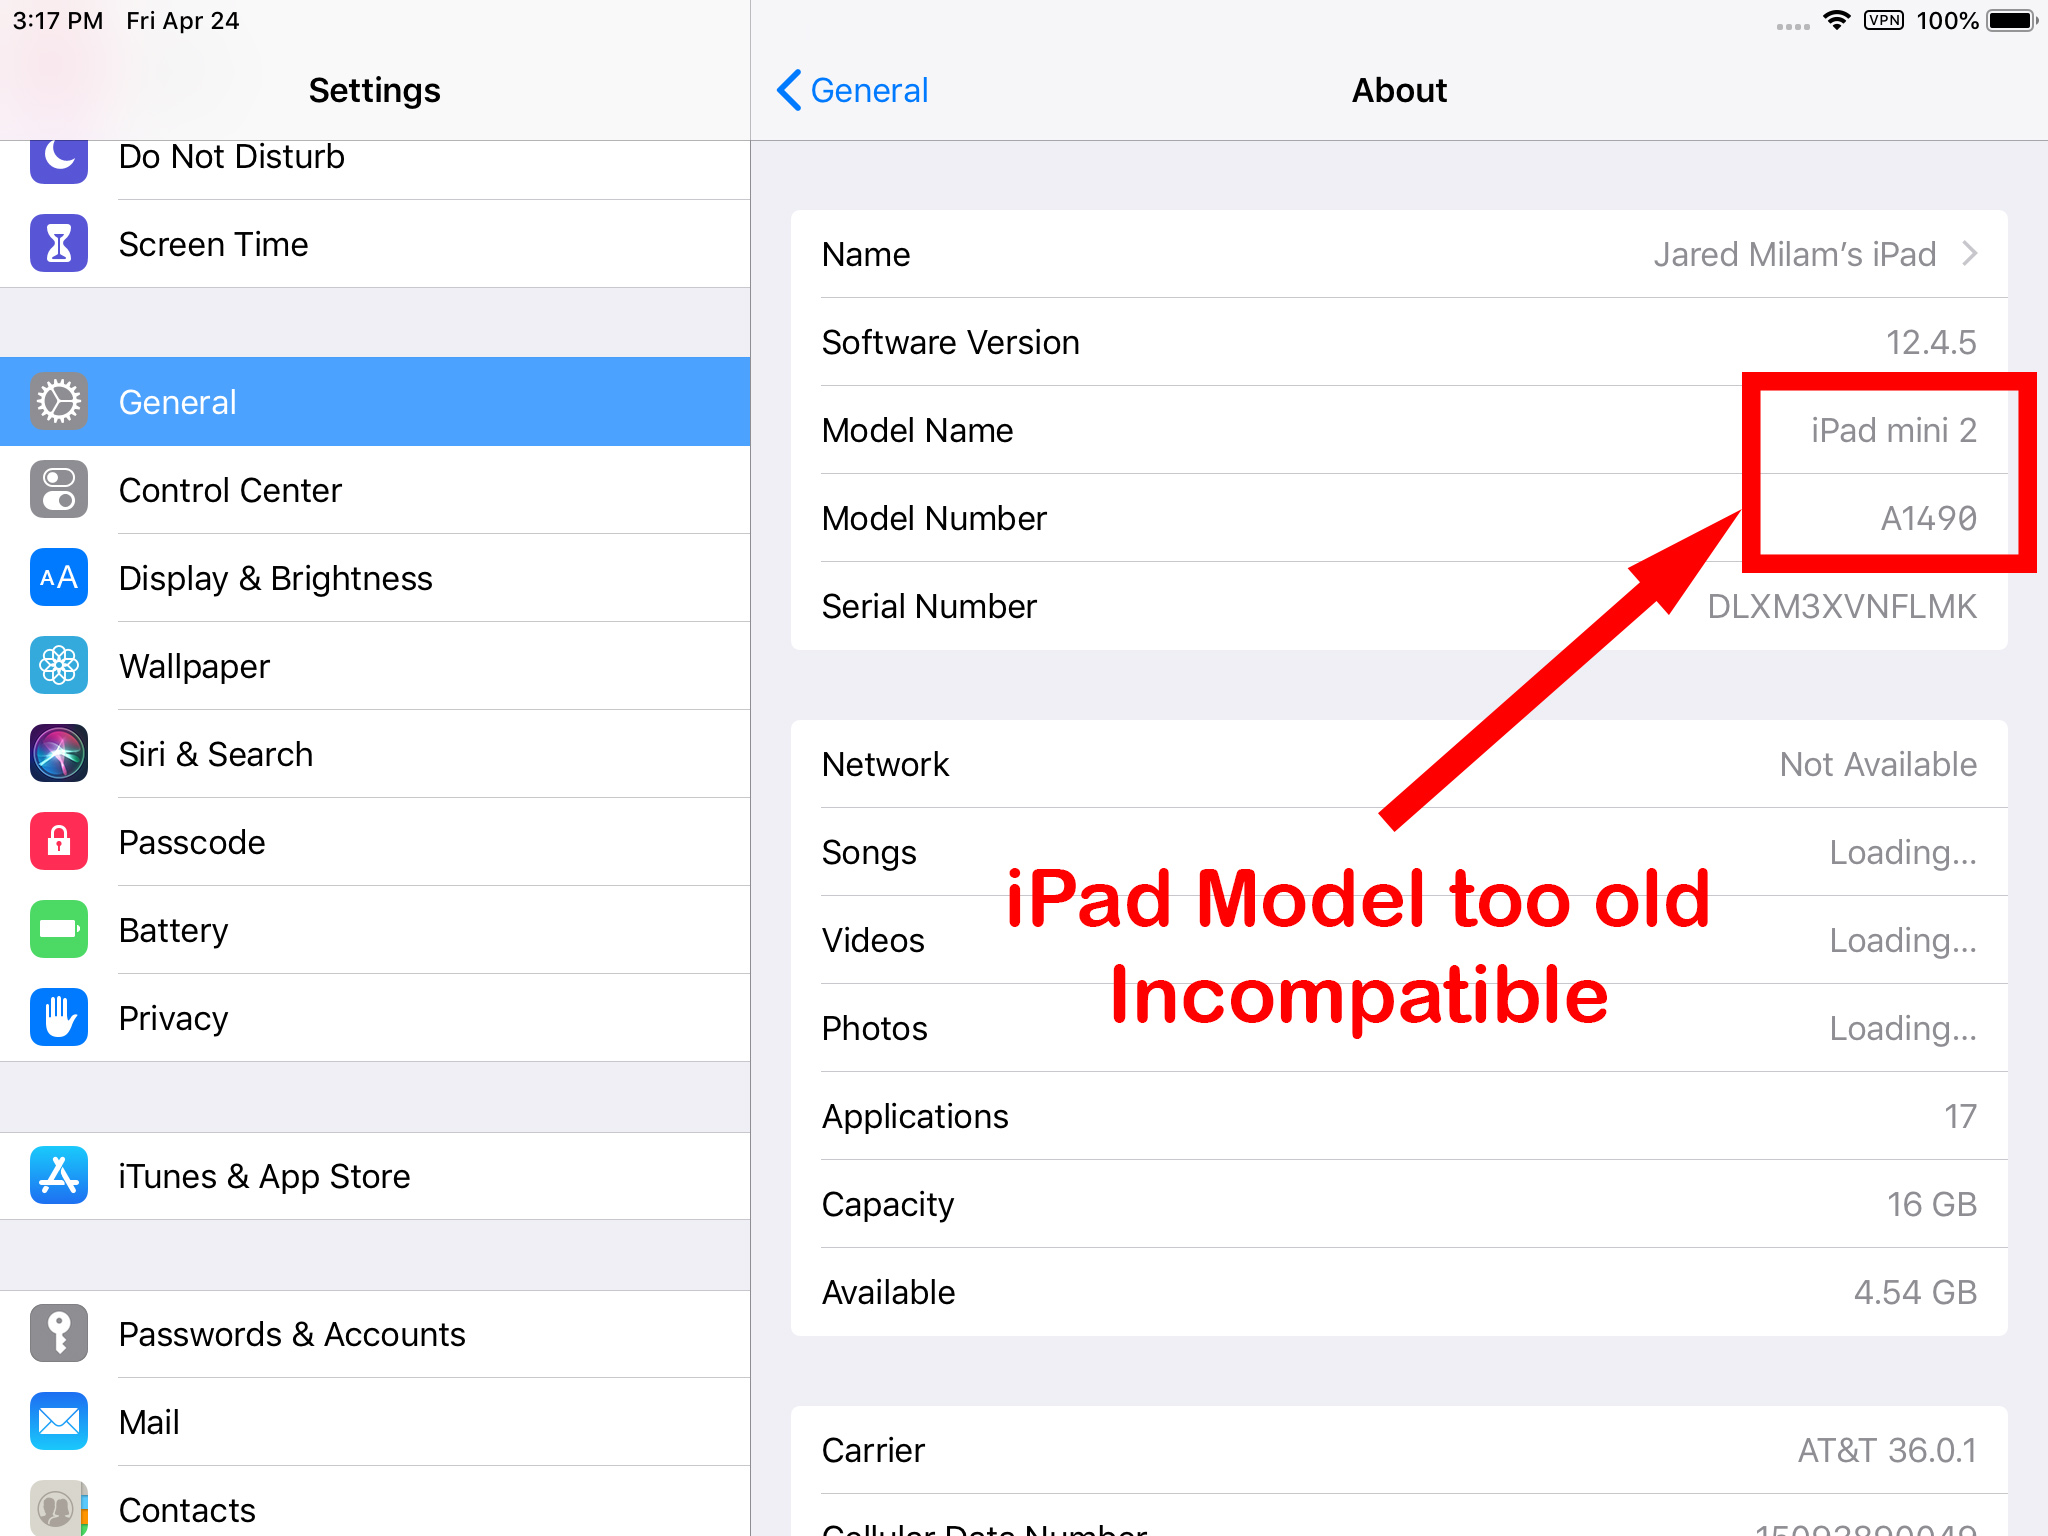 ipad_settings_ipad_model_too_old_incompatible.jpg